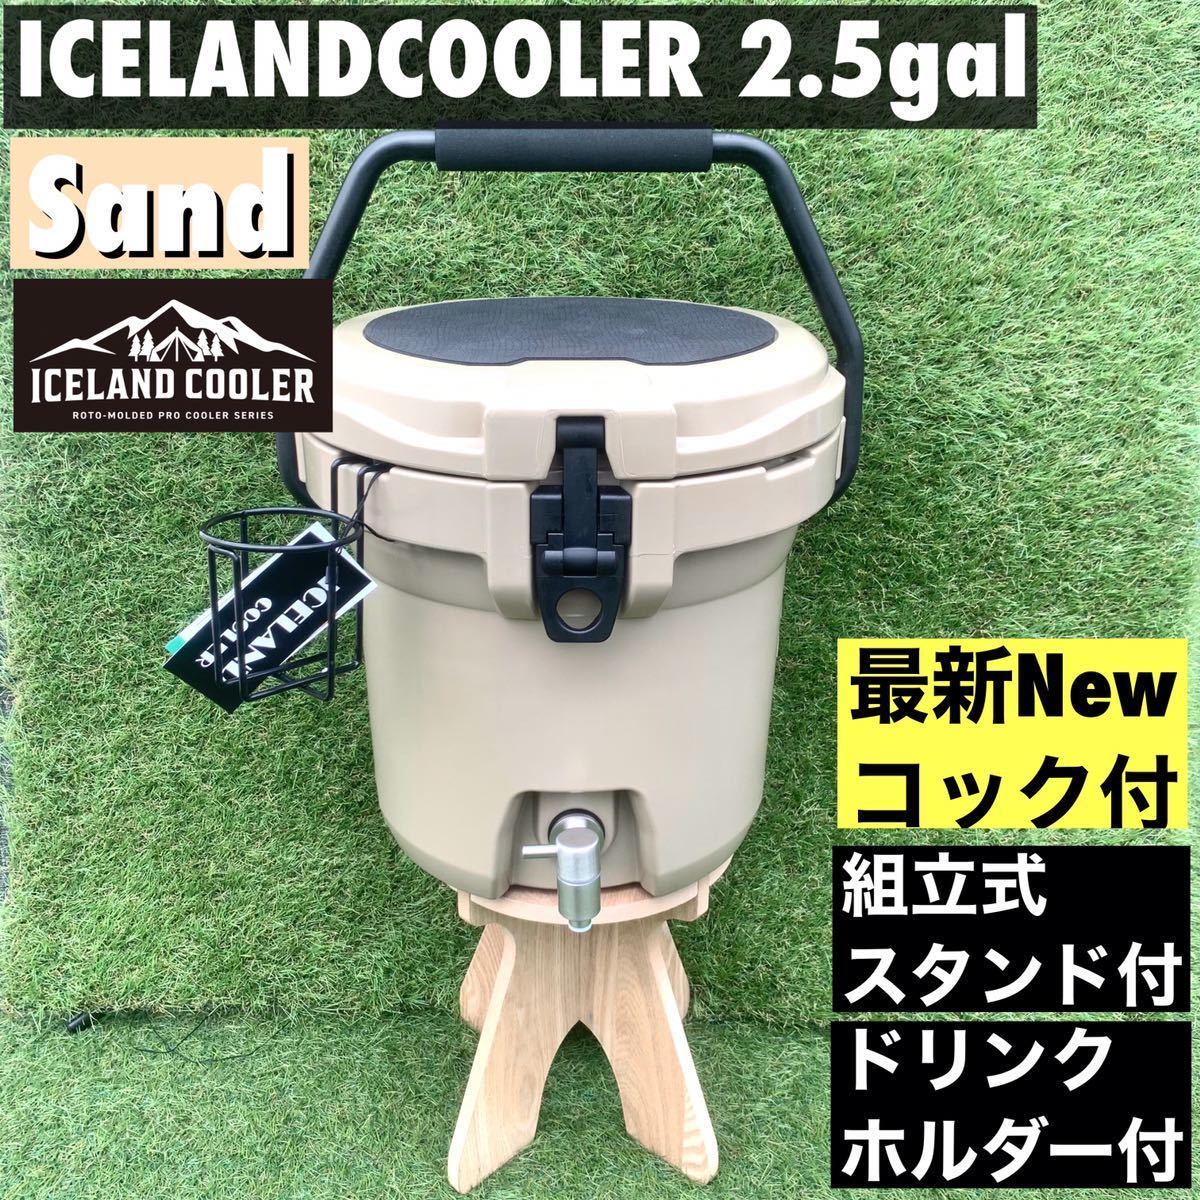 新型コック ICELANDCOOLER ウォータージャグ 2.5ガロン アイスバケット アイスランドクーラーボックス サンド　期間限定セール